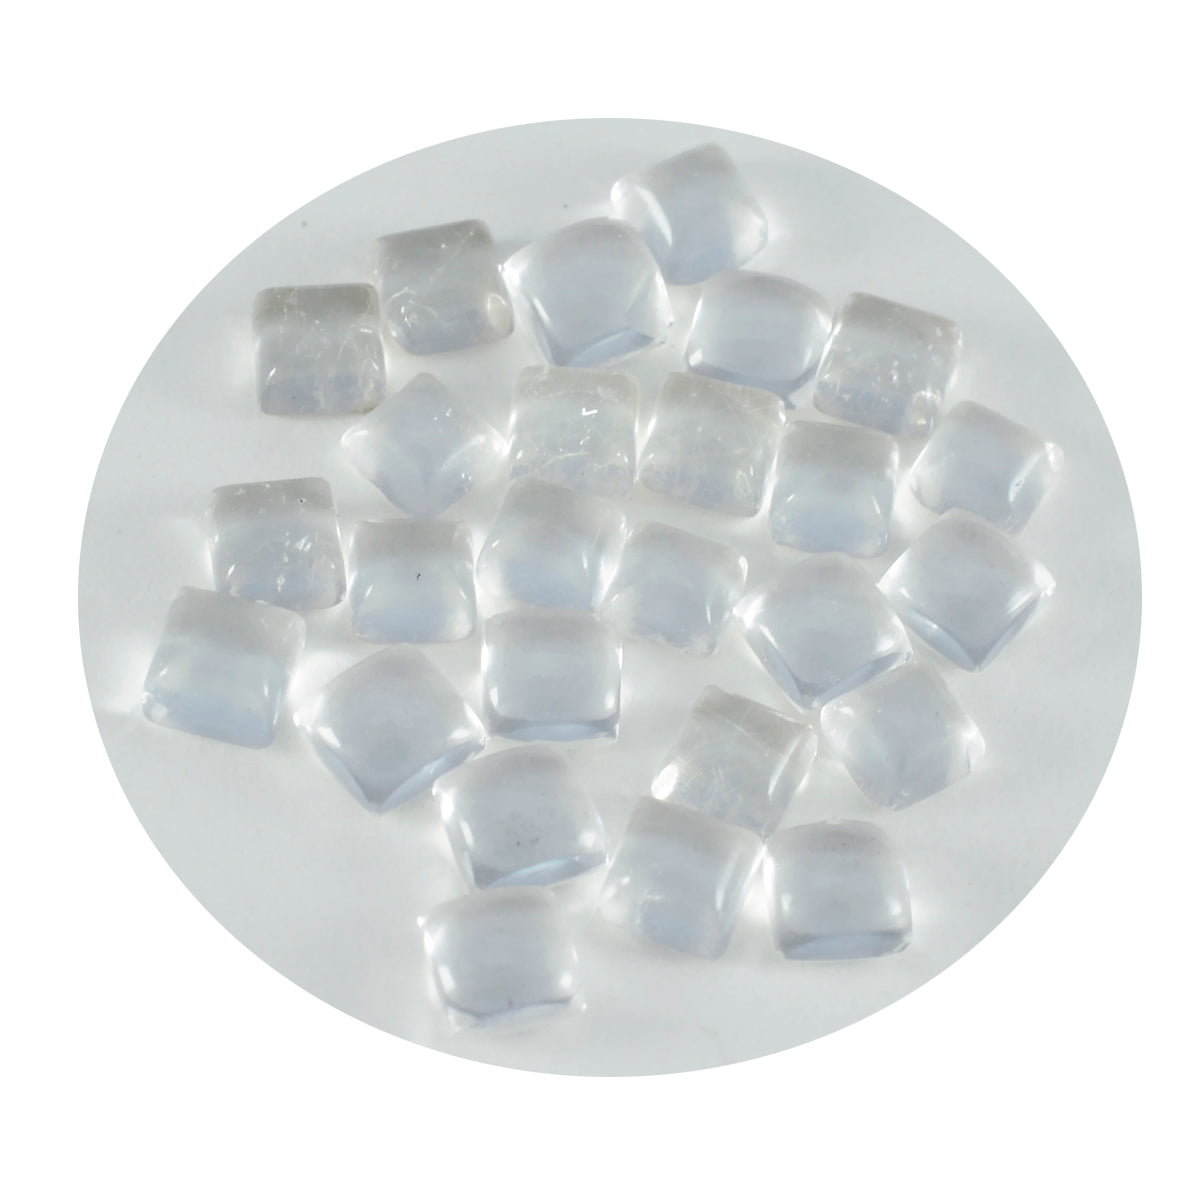 Riyogems 1 cabujón de cuarzo de cristal blanco de 7 x 7 mm, forma cuadrada, piedra preciosa de buena calidad